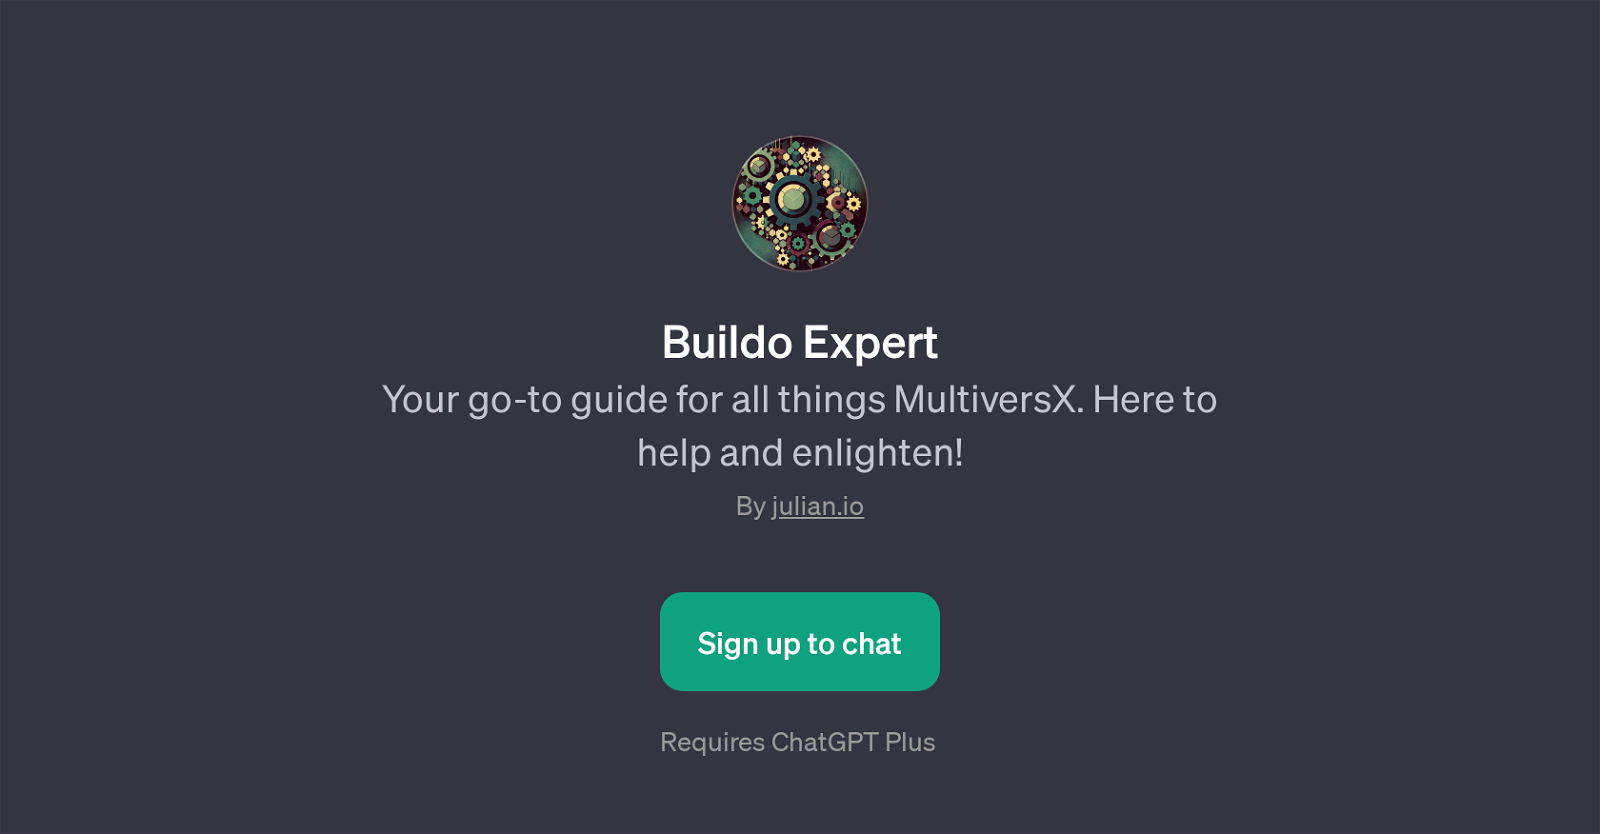 Buildo Expert website